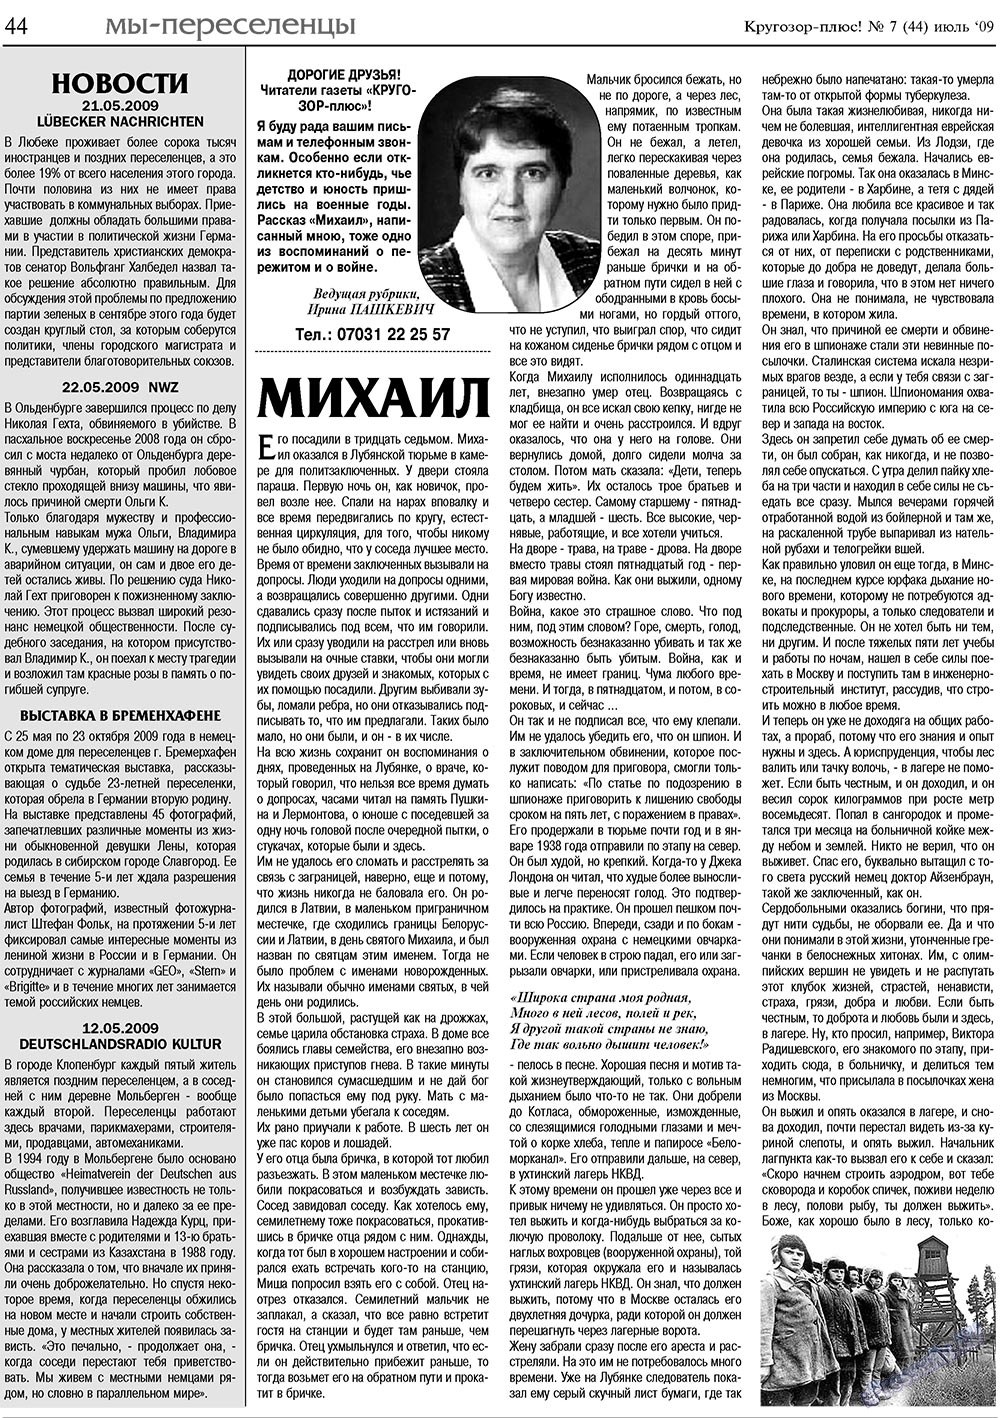 Кругозор плюс!, газета. 2009 №7 стр.44